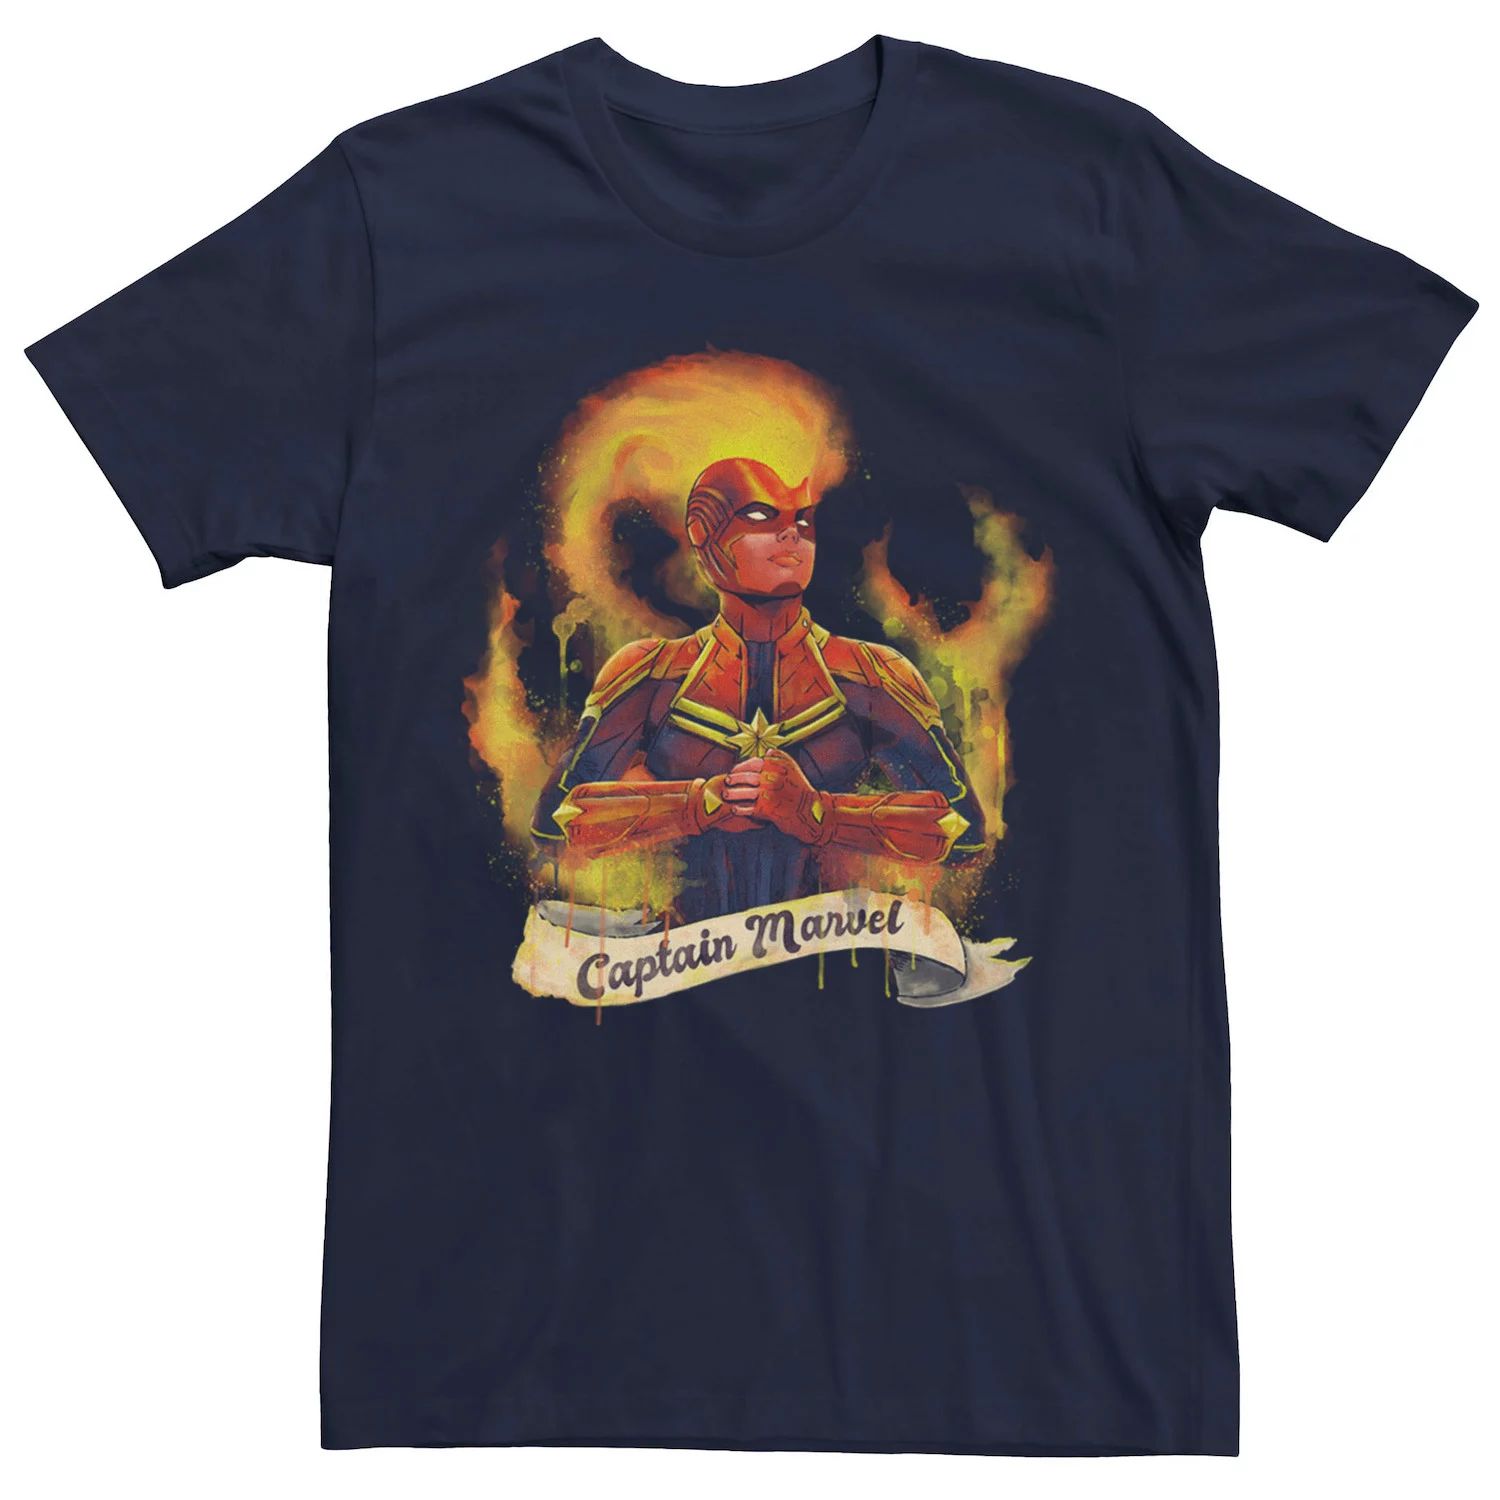 Мужская футболка с портретом Captain Flame Marvel